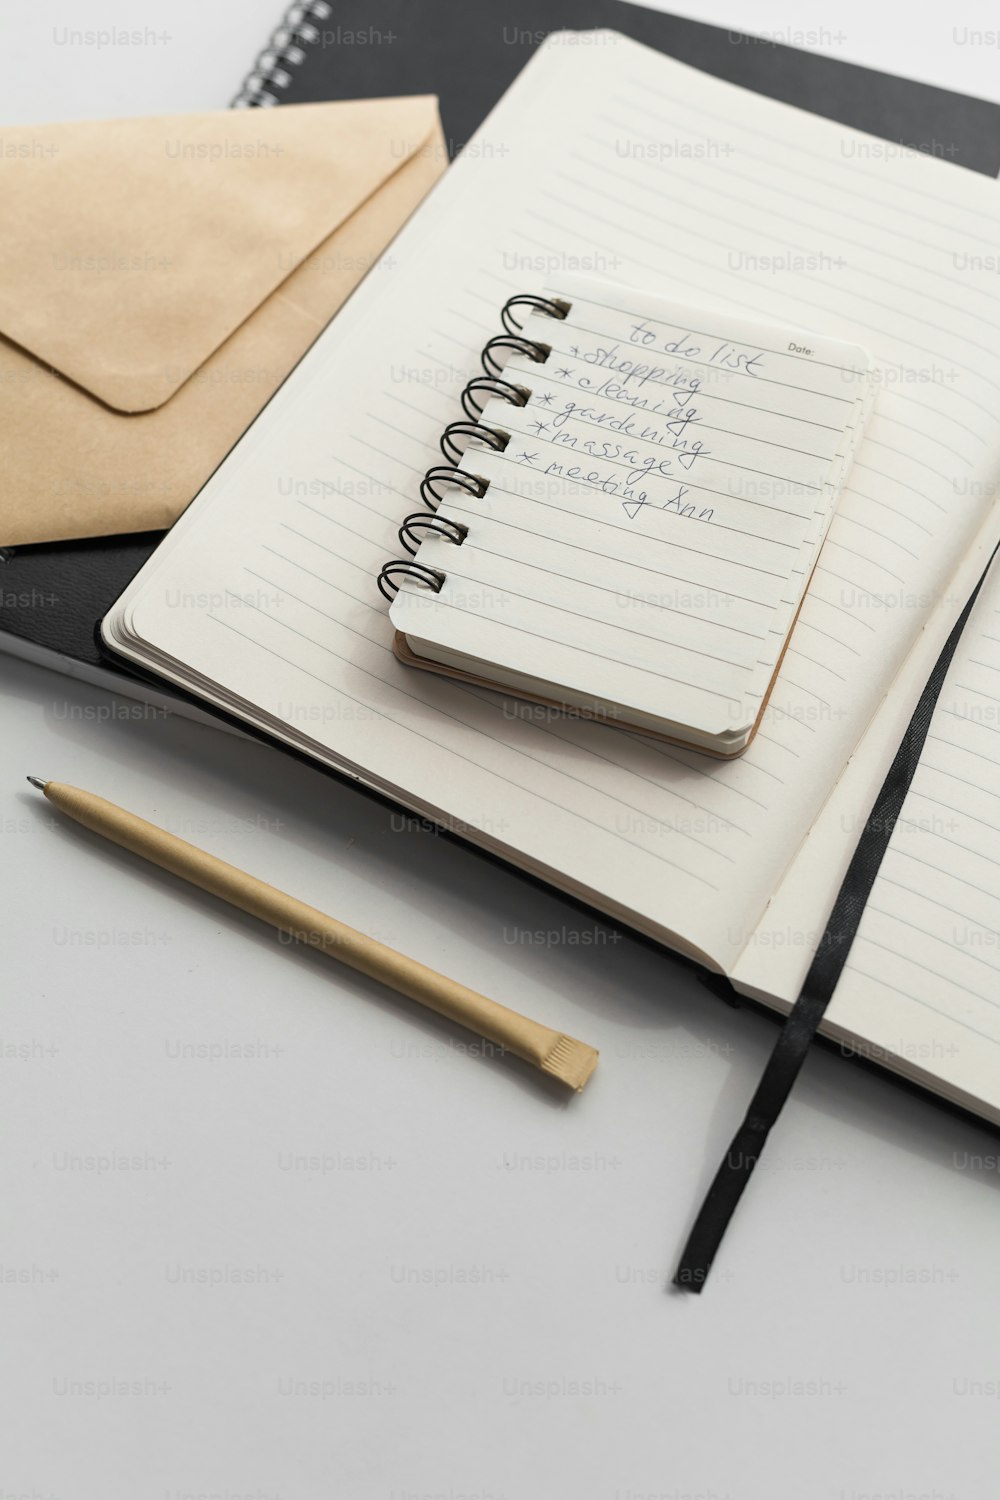 ein Notizbuch mit Notizblock und Stift darauf